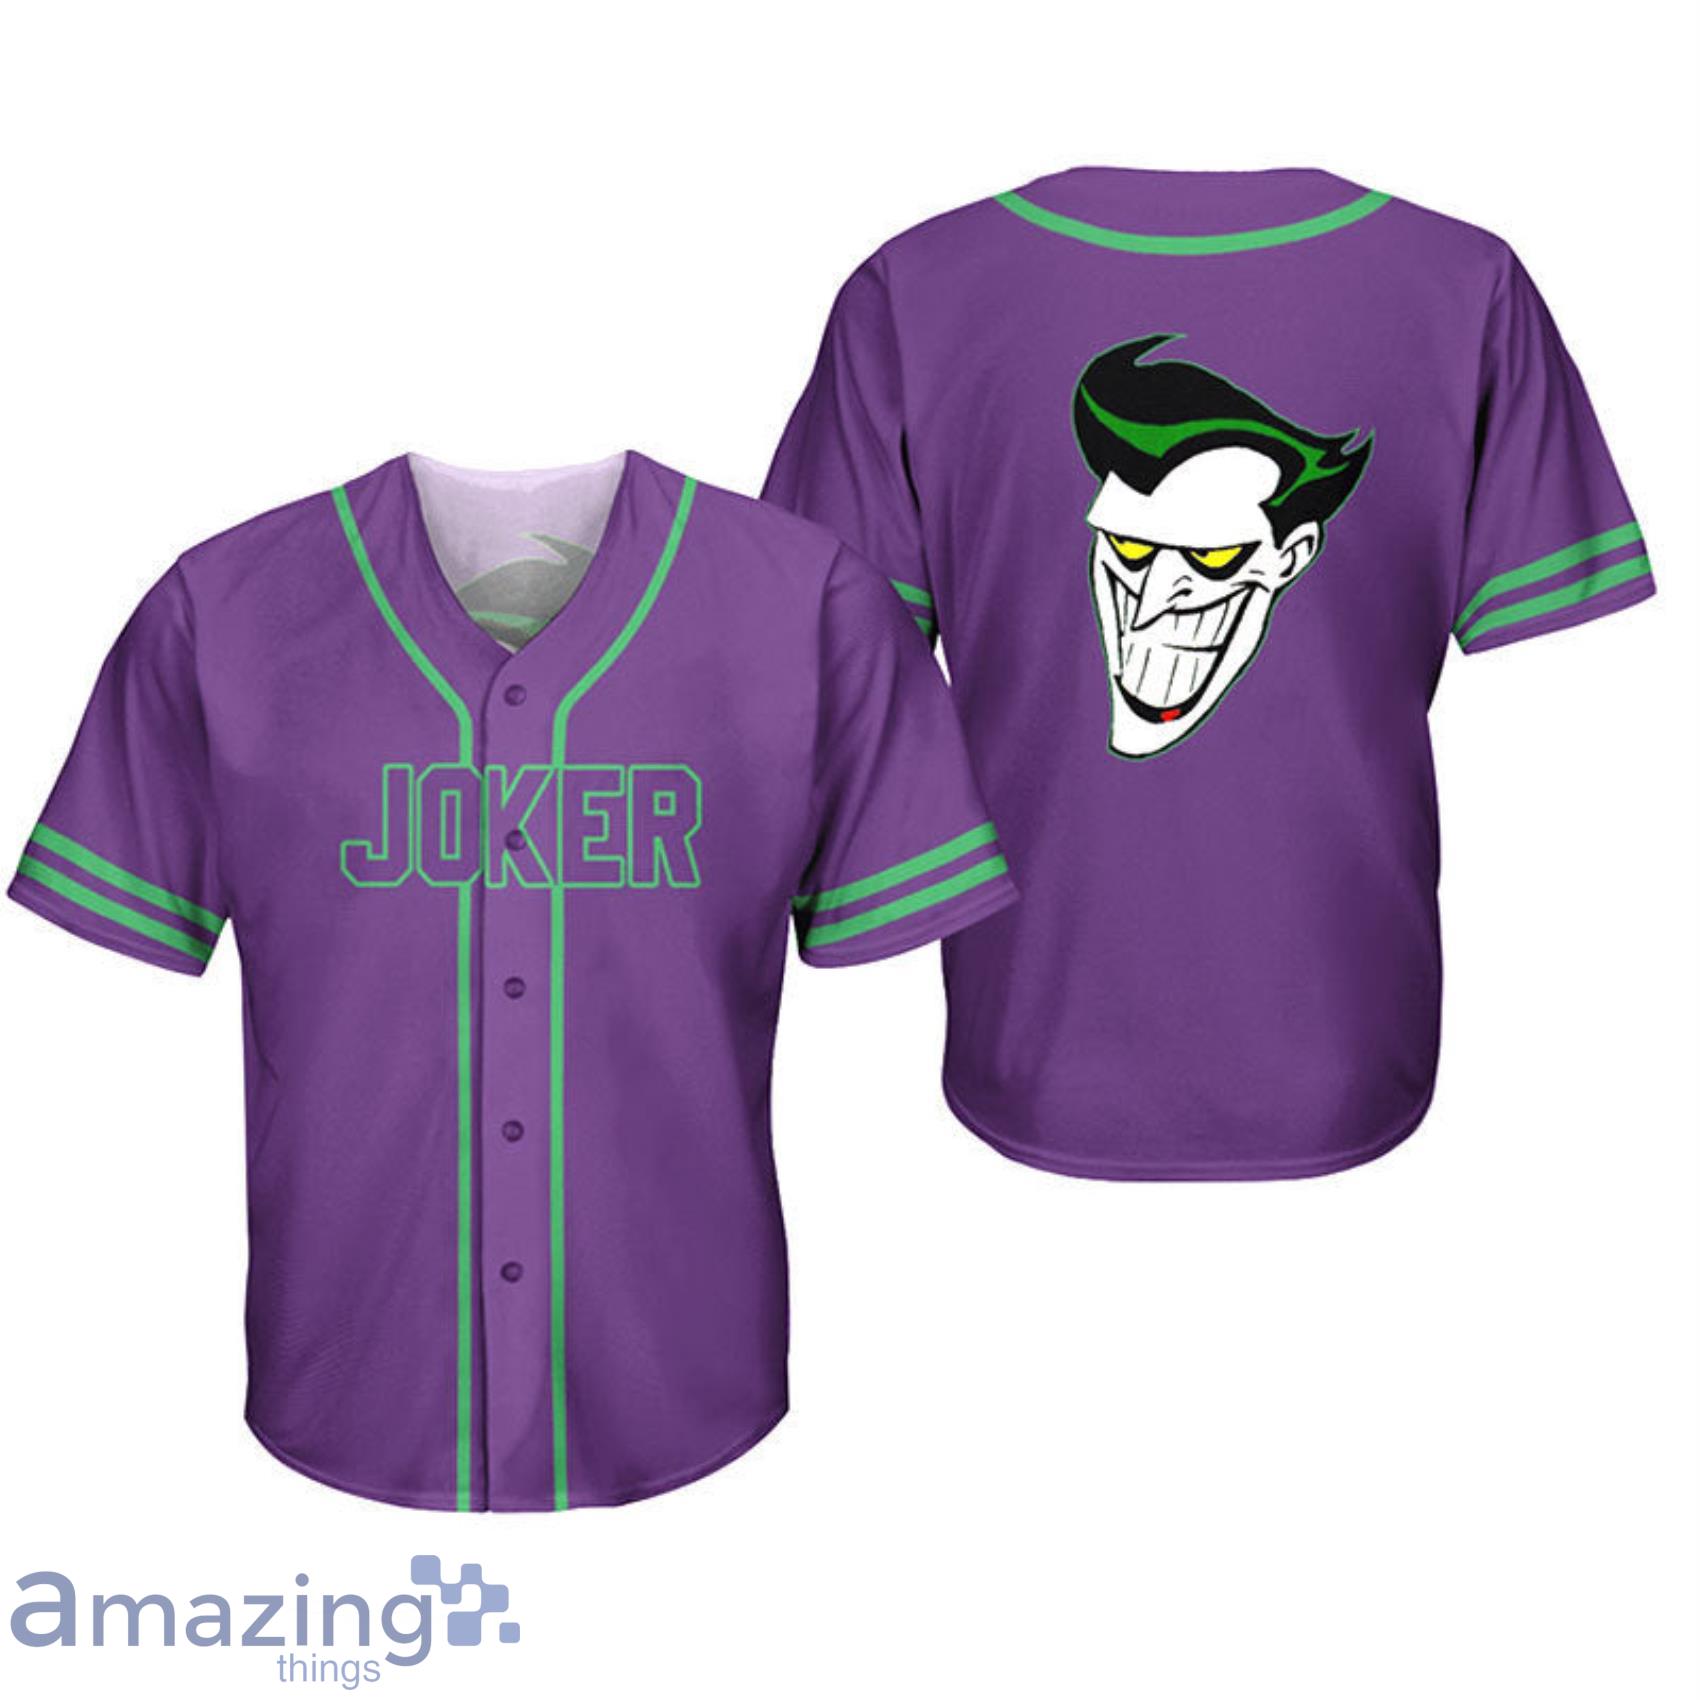 Joker Purple AOP Full Print Baseball Jersey Shirt